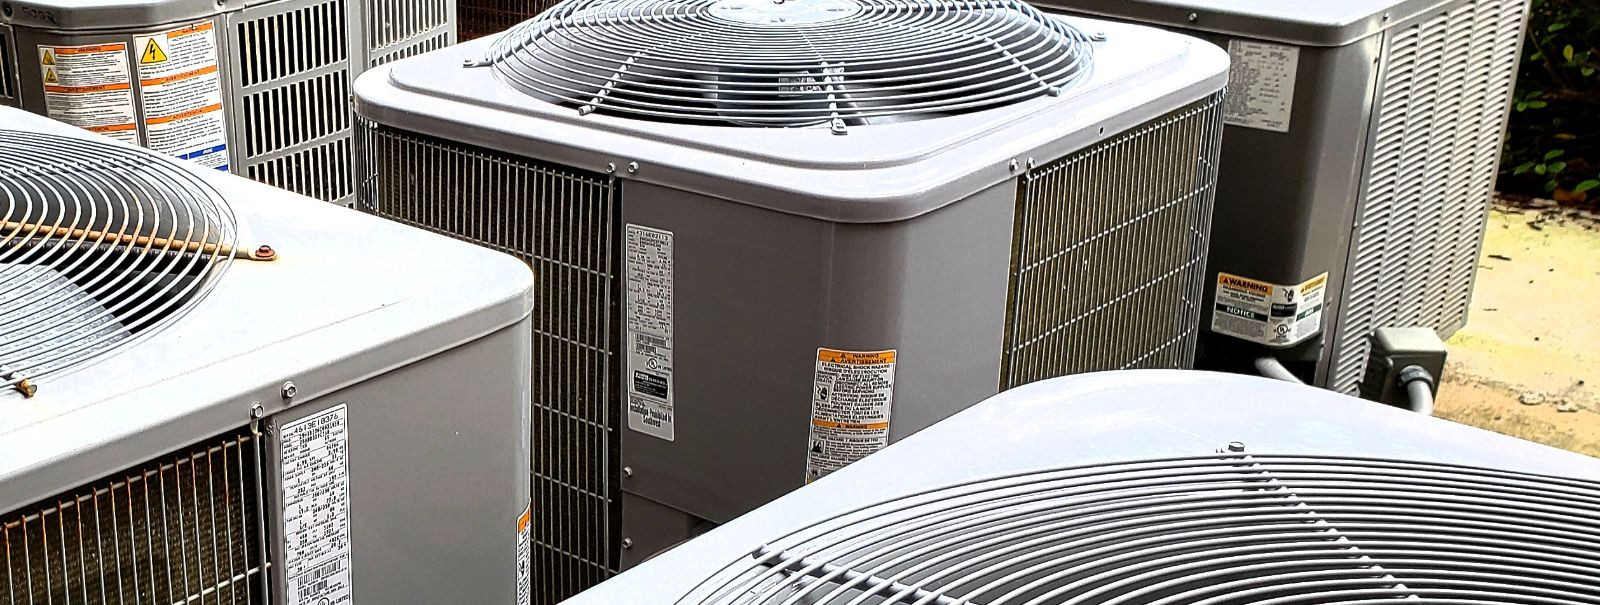 Tõhus ventilatsioon on oluline tervisliku, mugava ja energiatõhusa keskkonna säilitamiseks. Olgu te ehitusfirma, ärihoone omanik või koduomanik, on oluline mõis